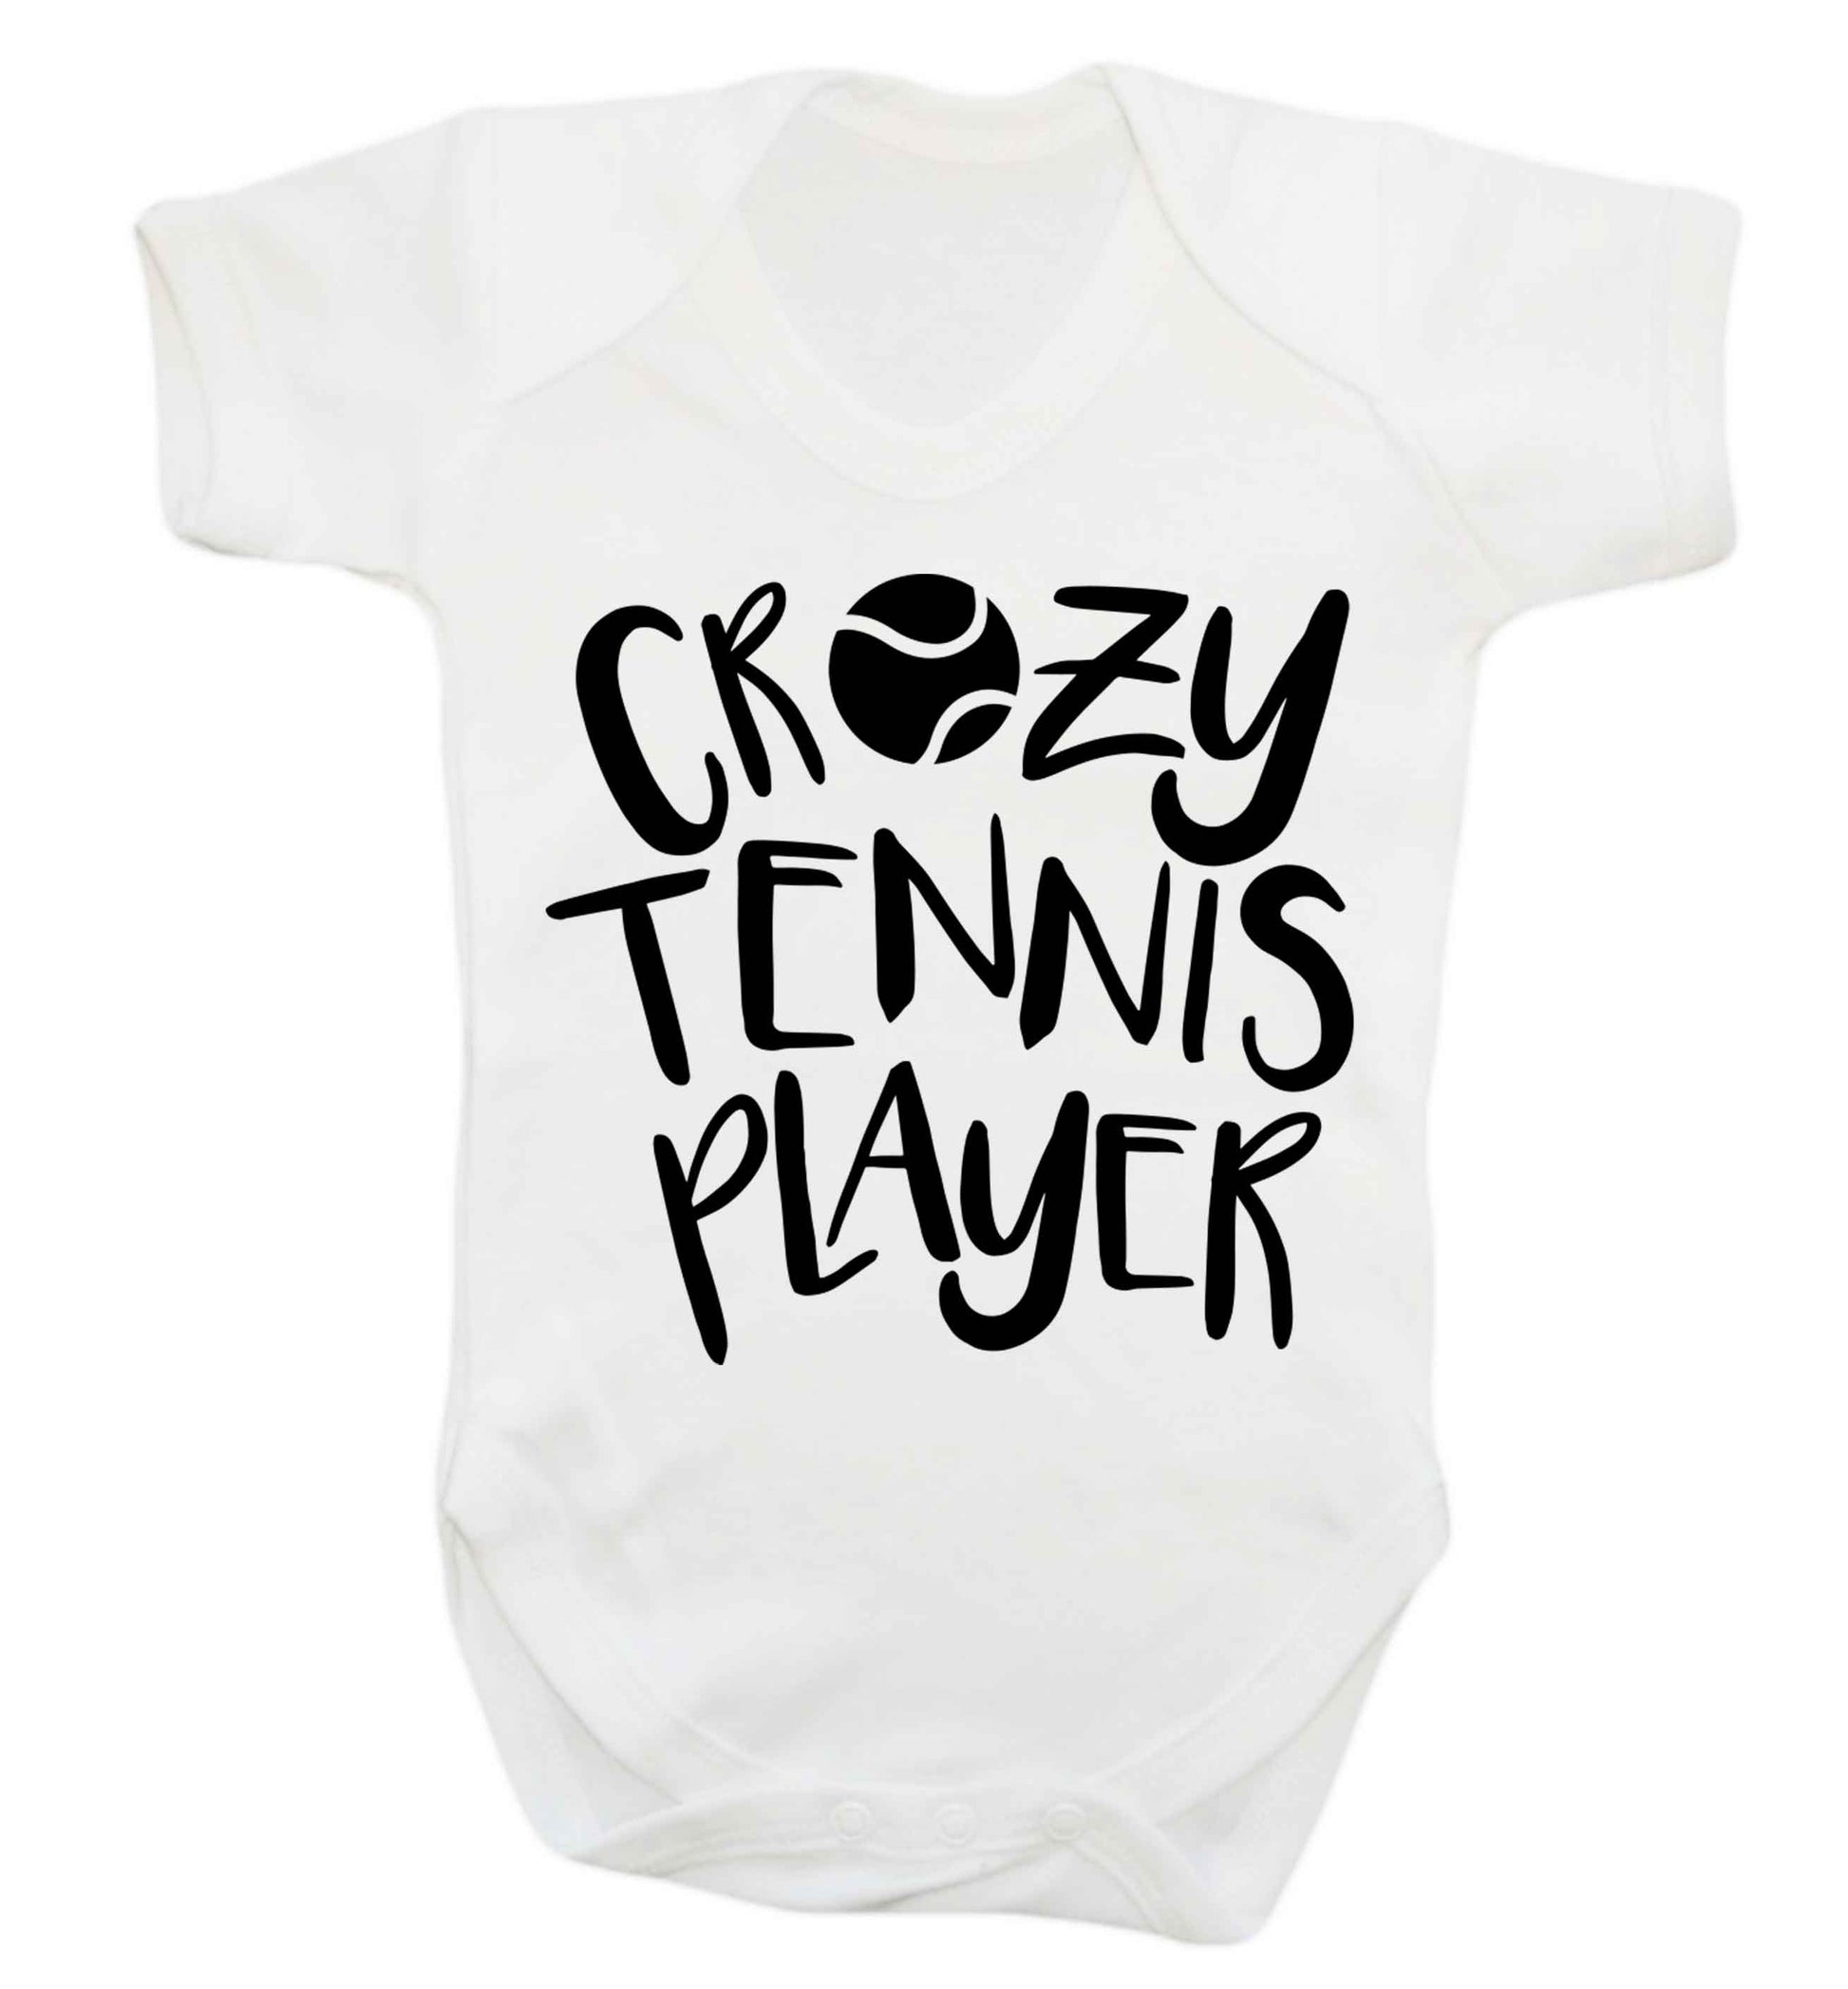 Crazy tennis player Baby Vest white 18-24 months